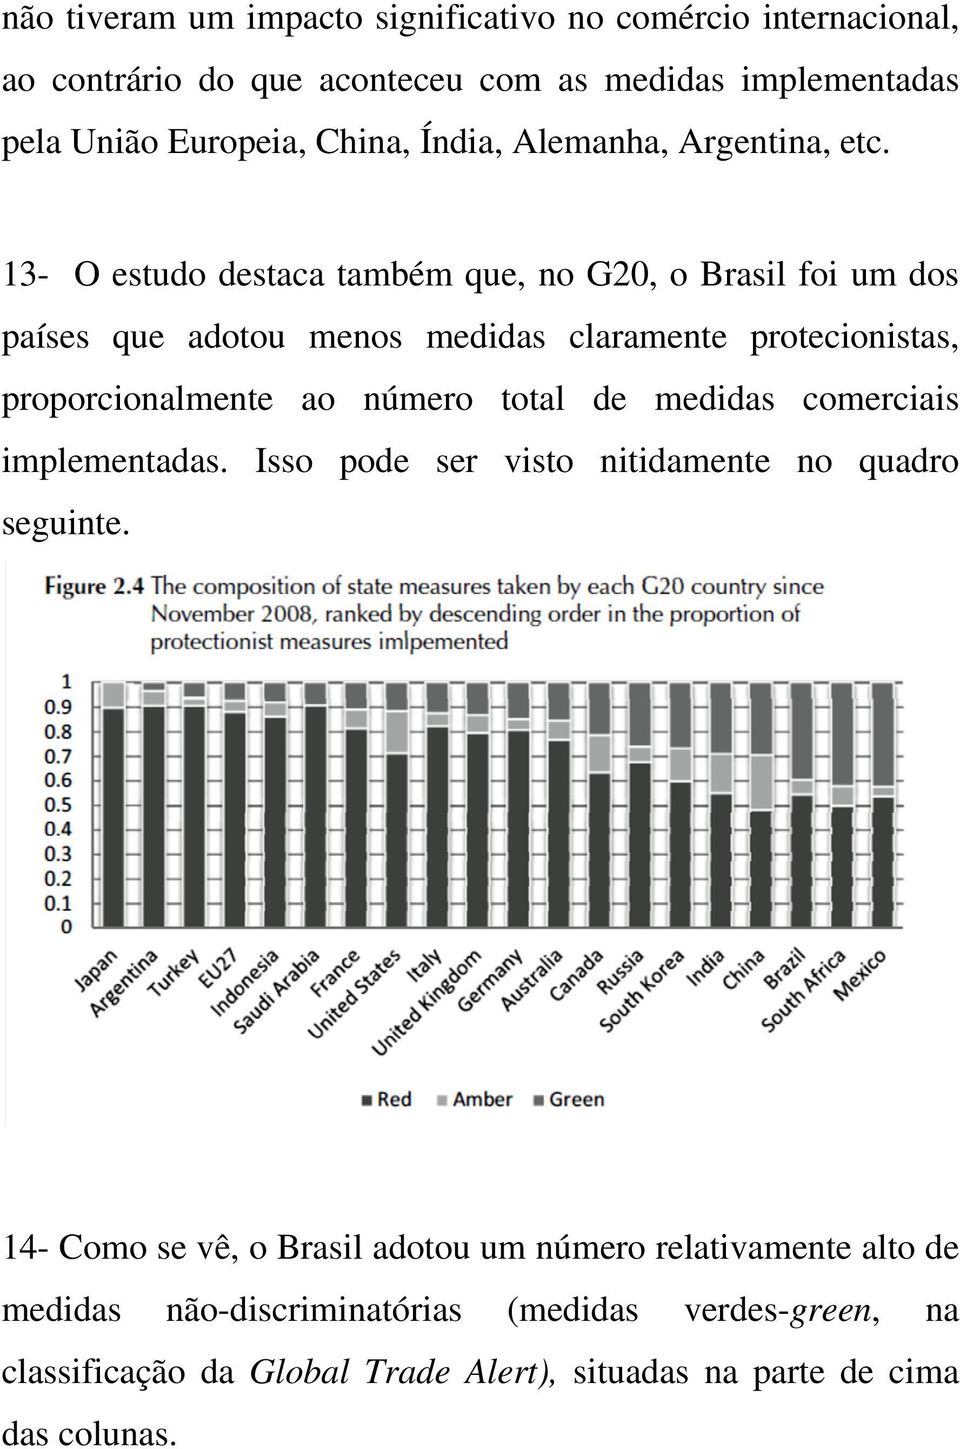 13- O estudo destaca também que, no G20, o Brasil foi um dos países que adotou menos medidas claramente protecionistas, proporcionalmente ao número total